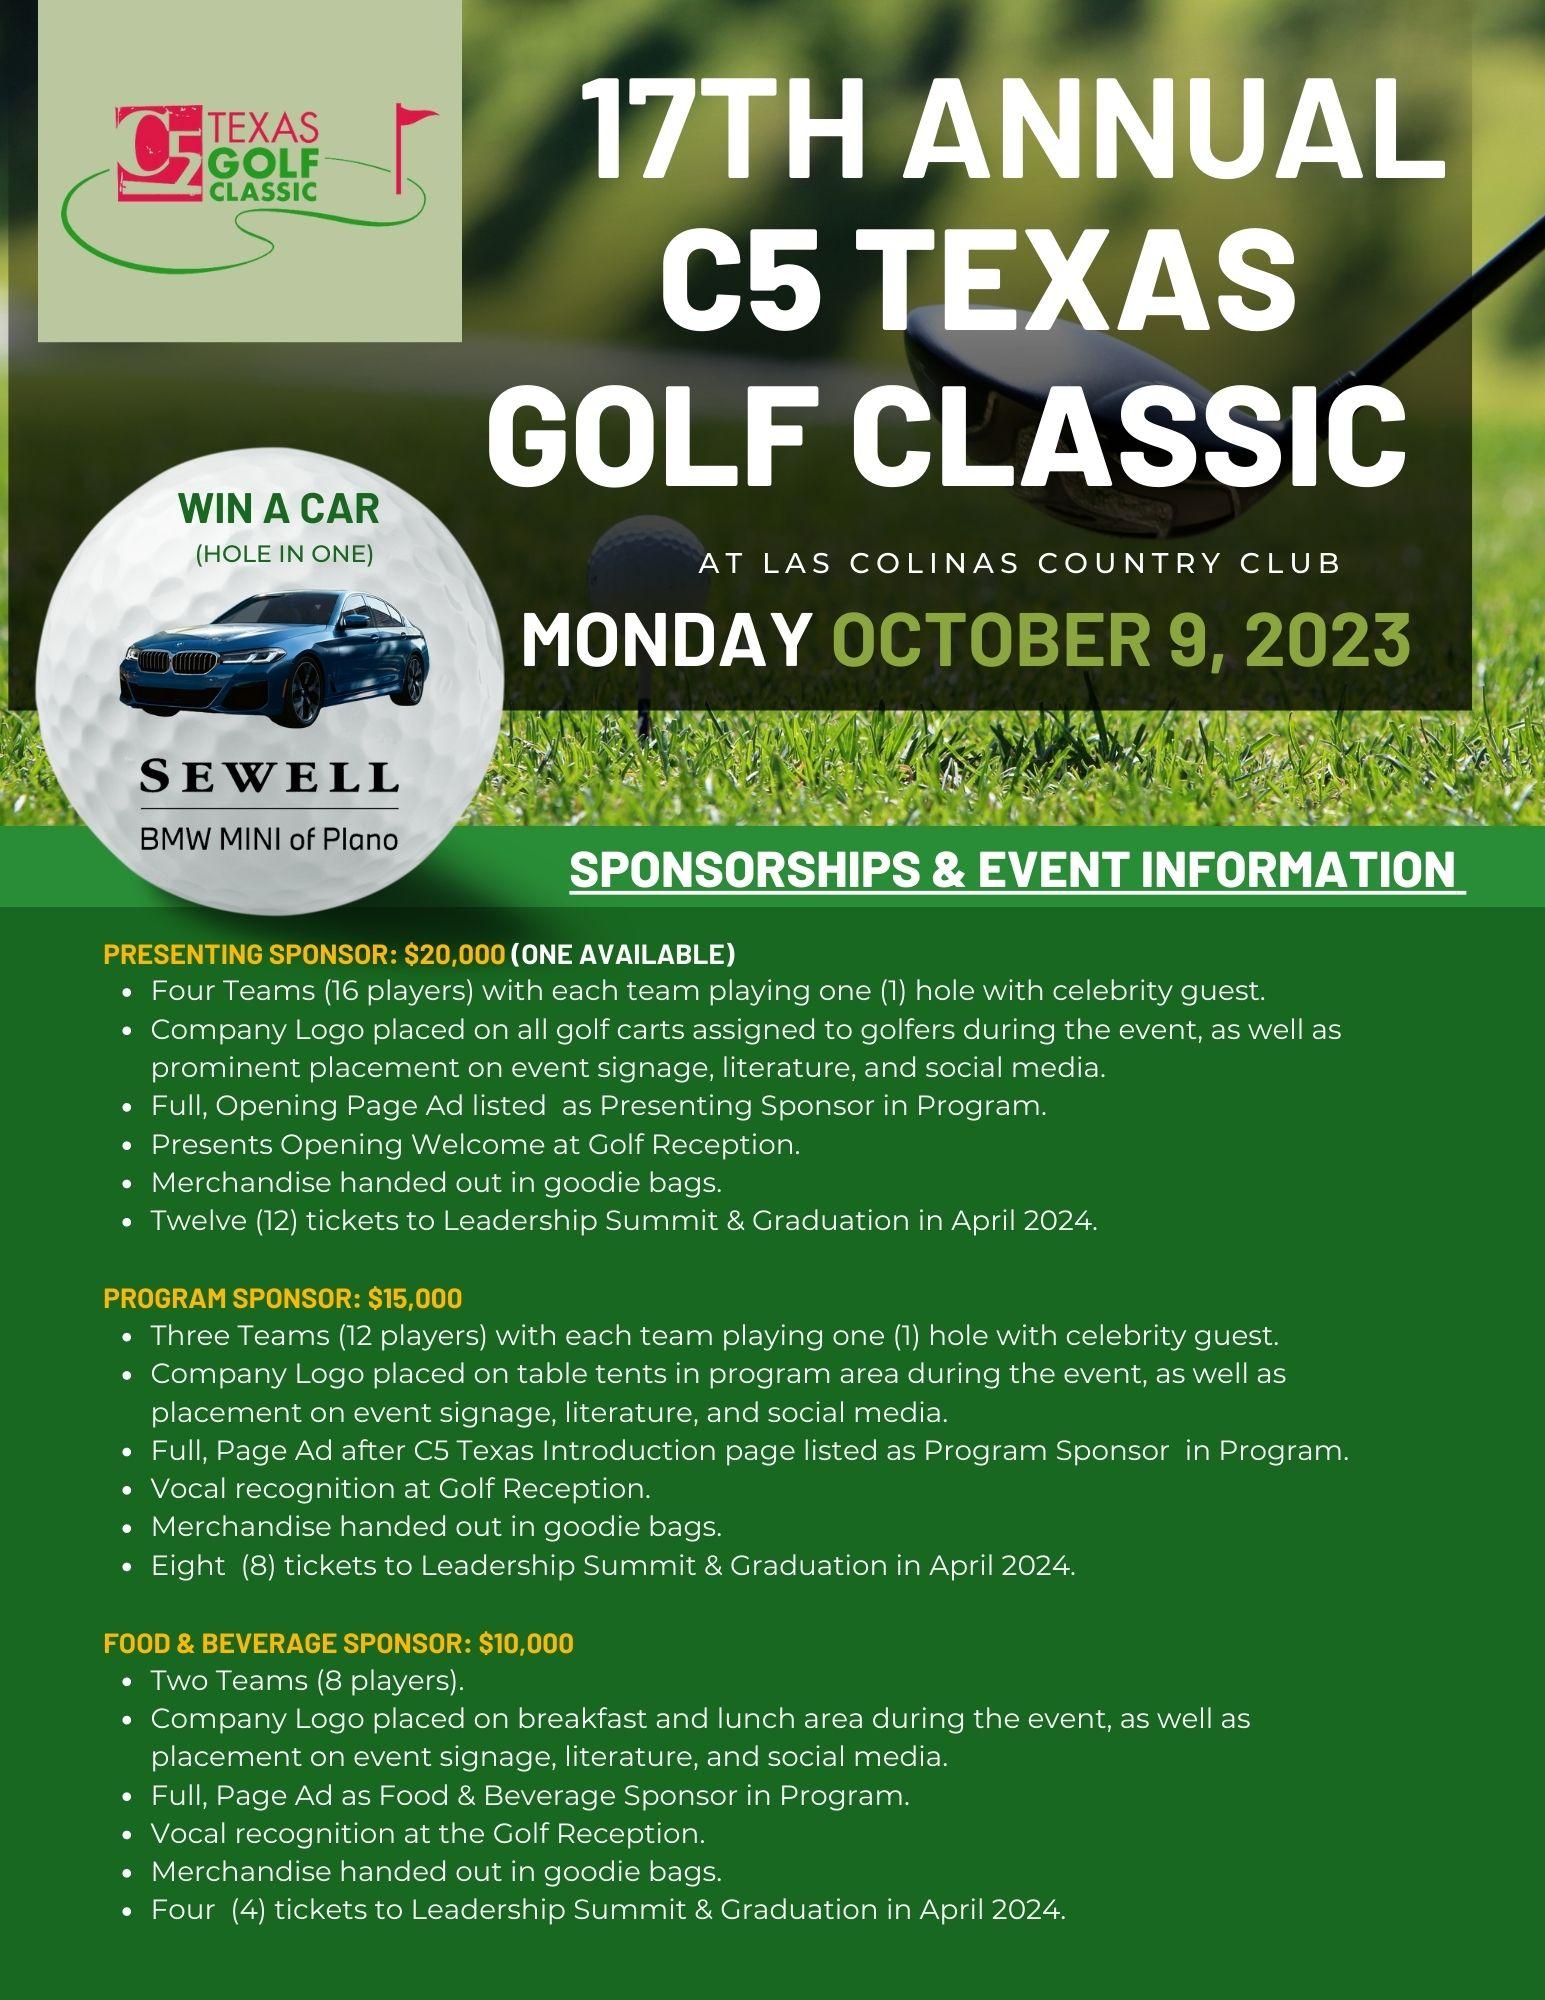 17th Annual C5 Texas Golf Classic